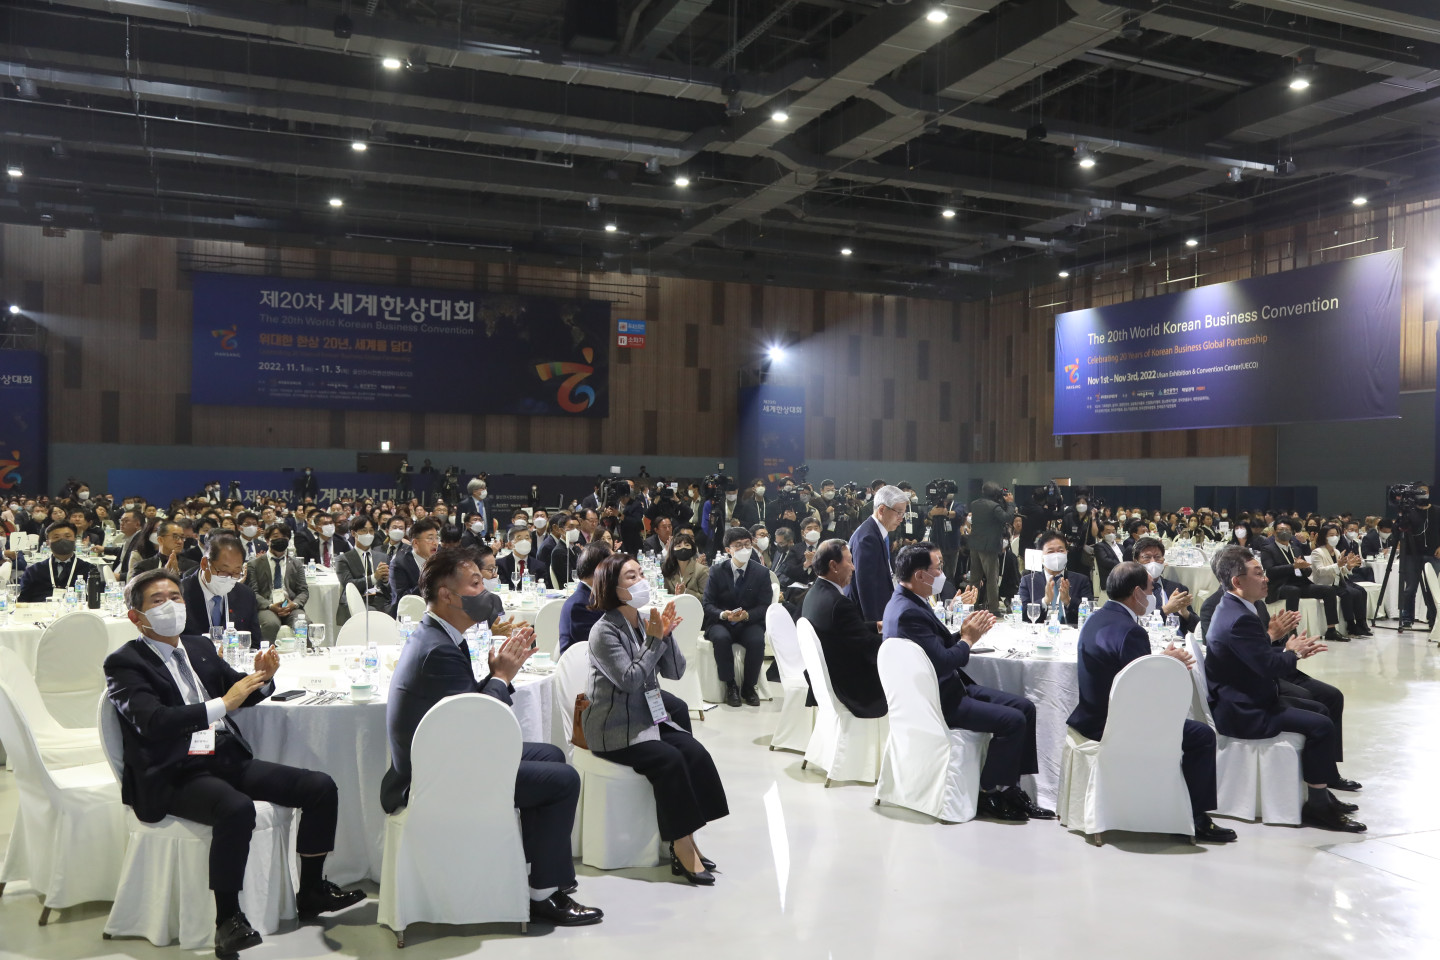 Участники наслаждаются обедом в честь открытия 20-й Всемирной корейской бизнес-конвенции